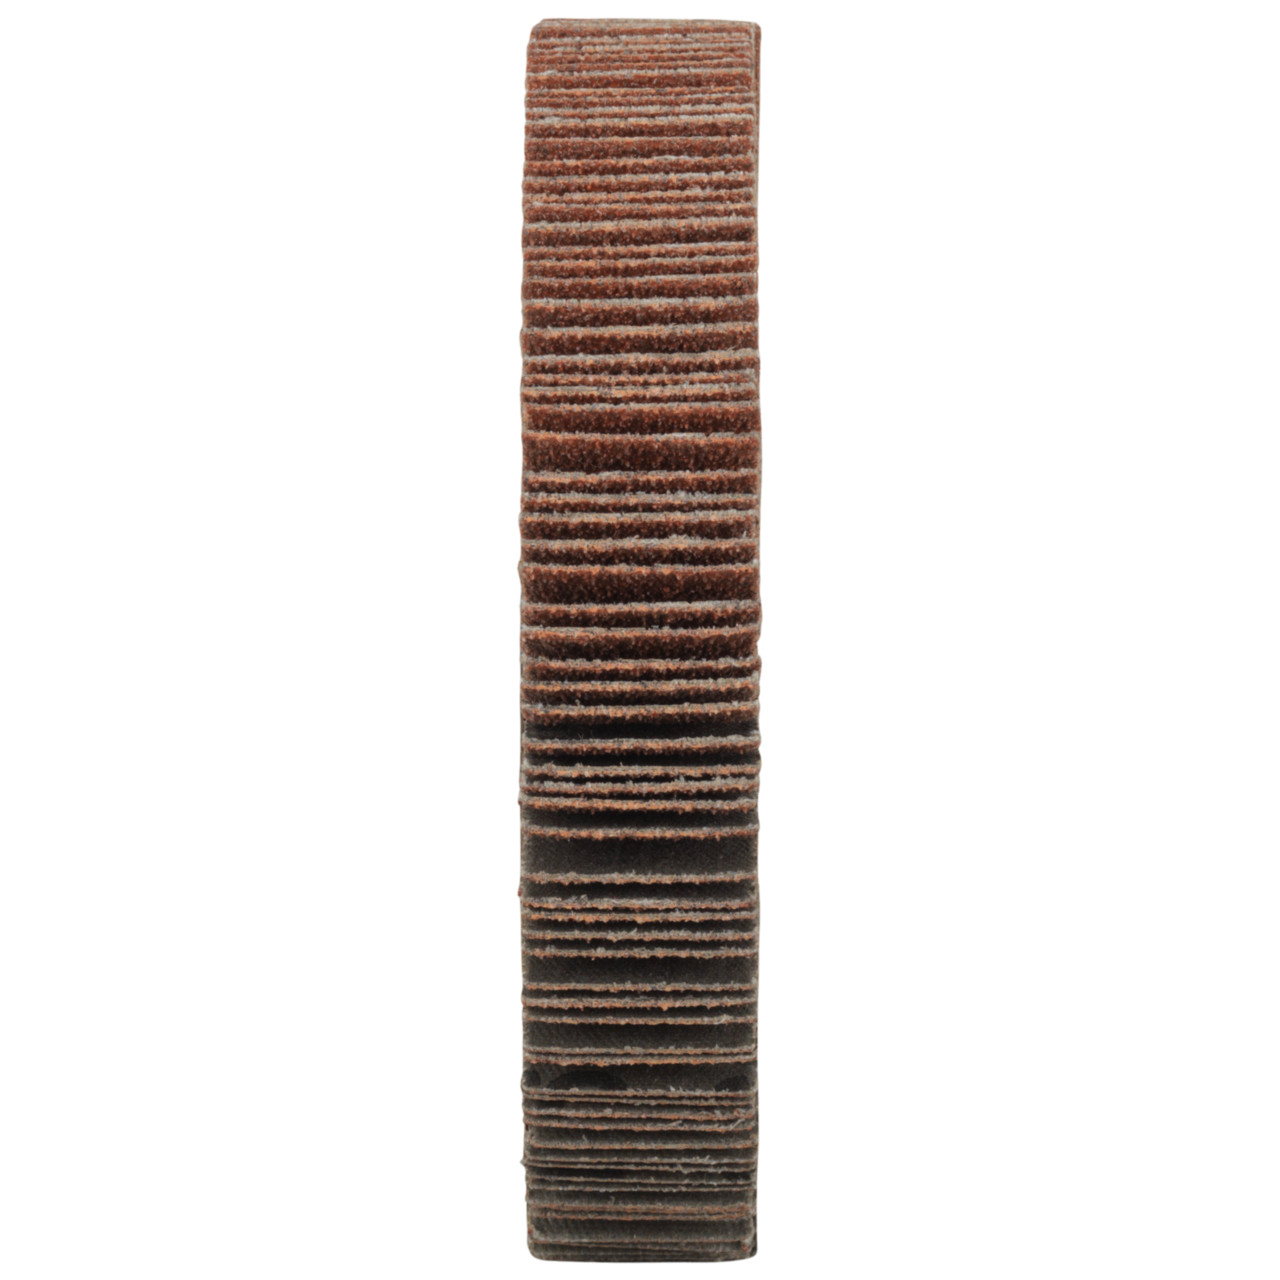 Tyrolit A-P01 C X Ruedas de abanico DxD 115x20 Para acero, metal no férreo y madera, P120, forma: 1LA - (rueda de abanico), Art. 34057515